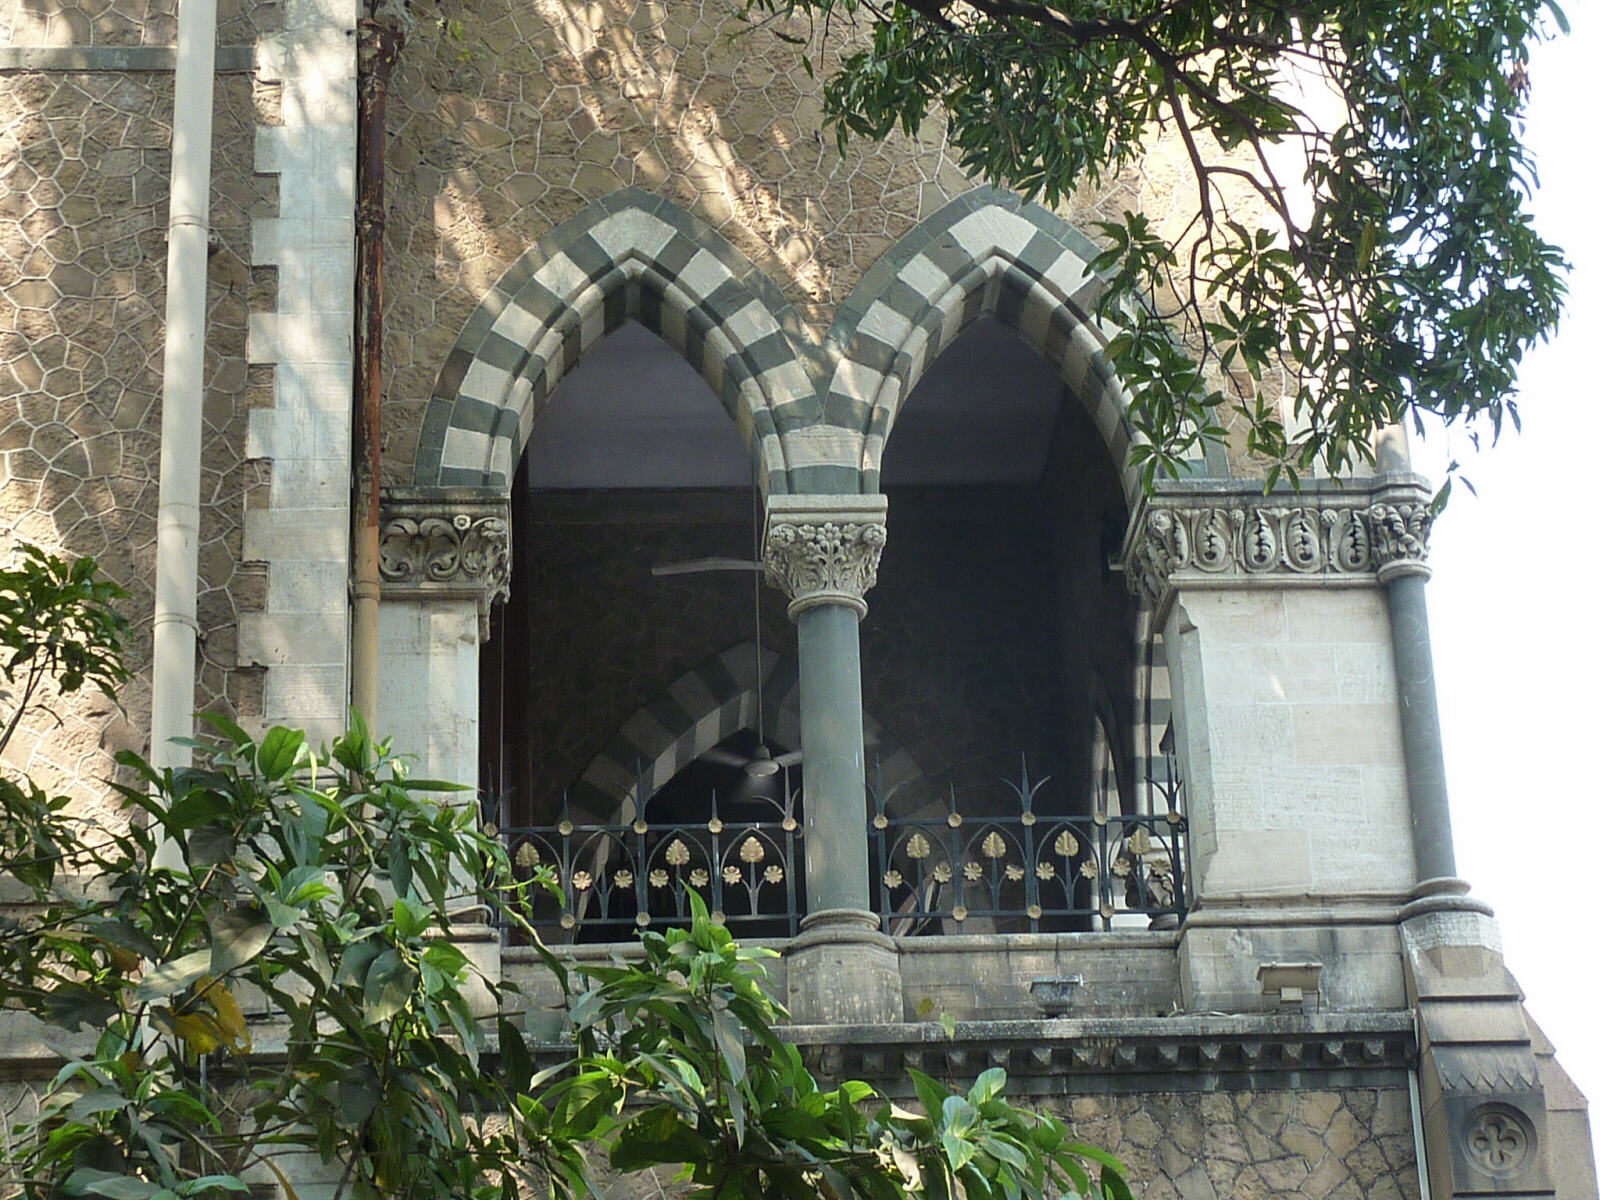 The David Sassoon library in Mumbai, India